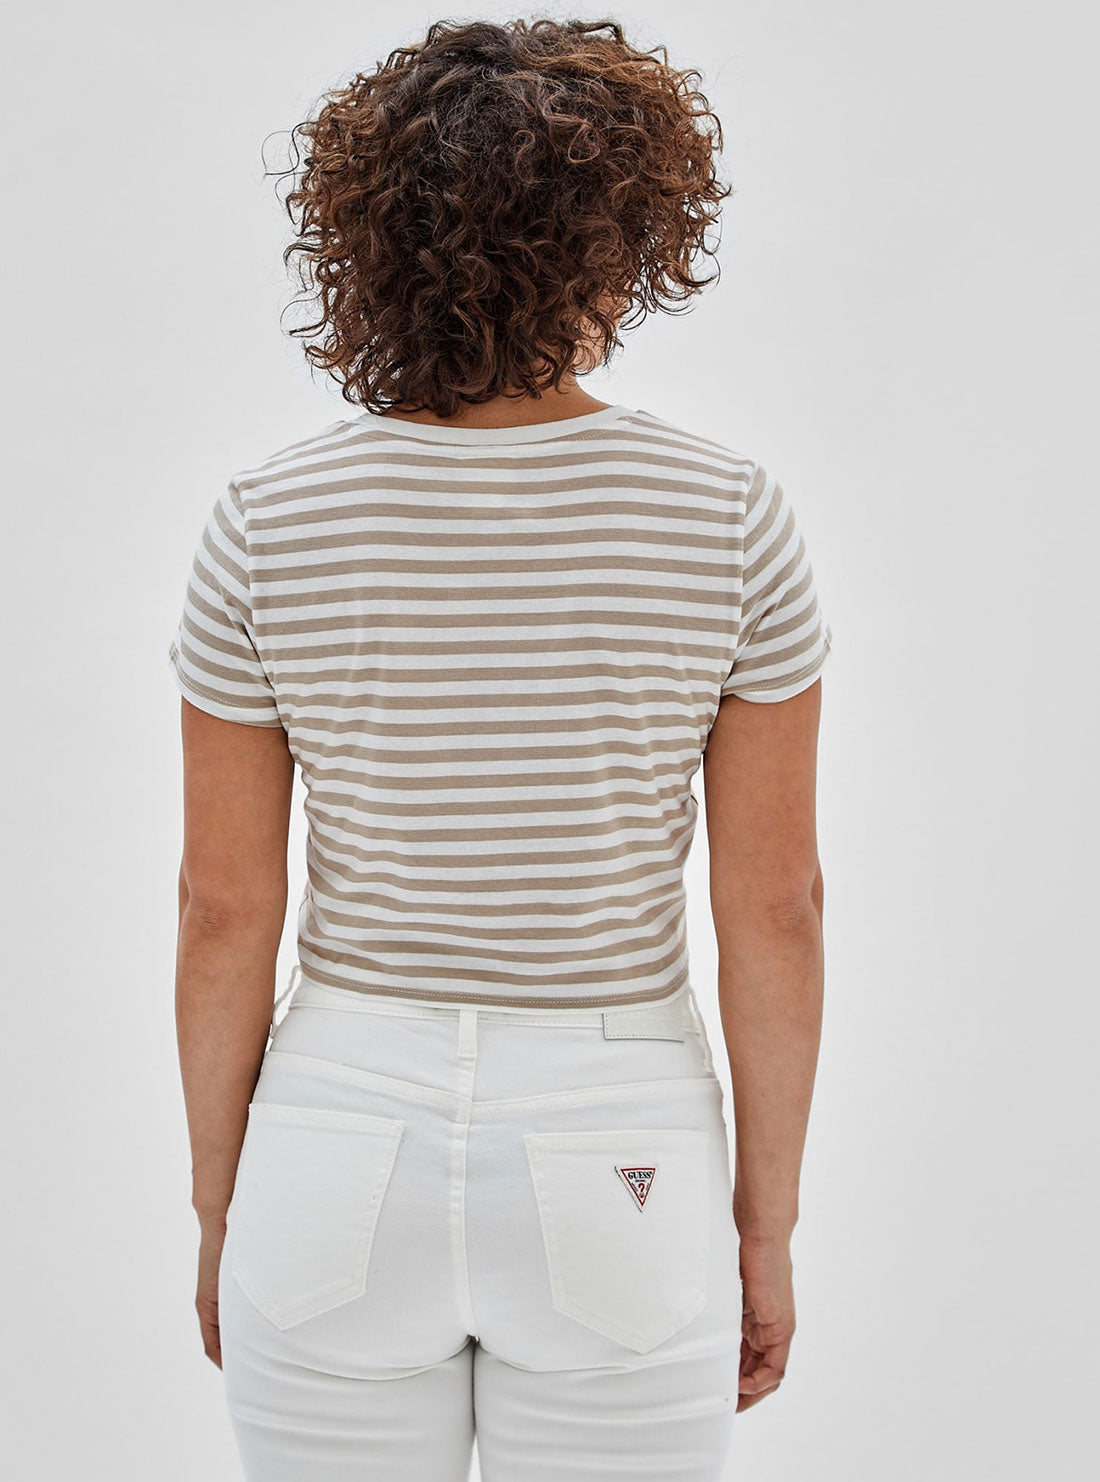 GUESS Women's Guess Originals White Multi Clara Striped Baby T-Shirt W3GI60KA0Q3 Back View